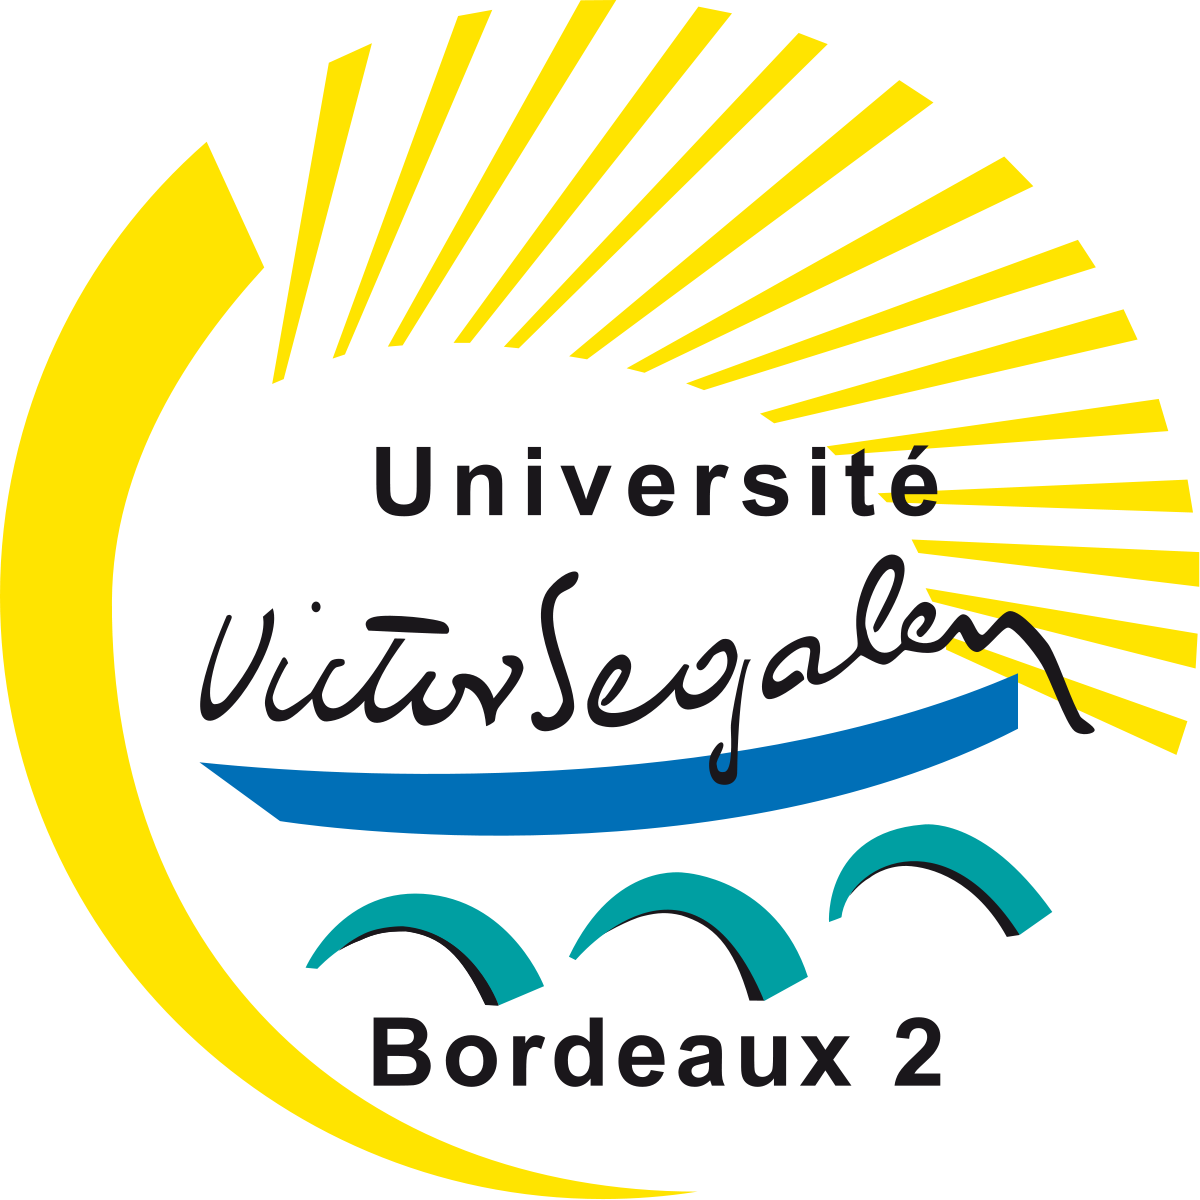 Université Bordeaux 2 (logo).svg